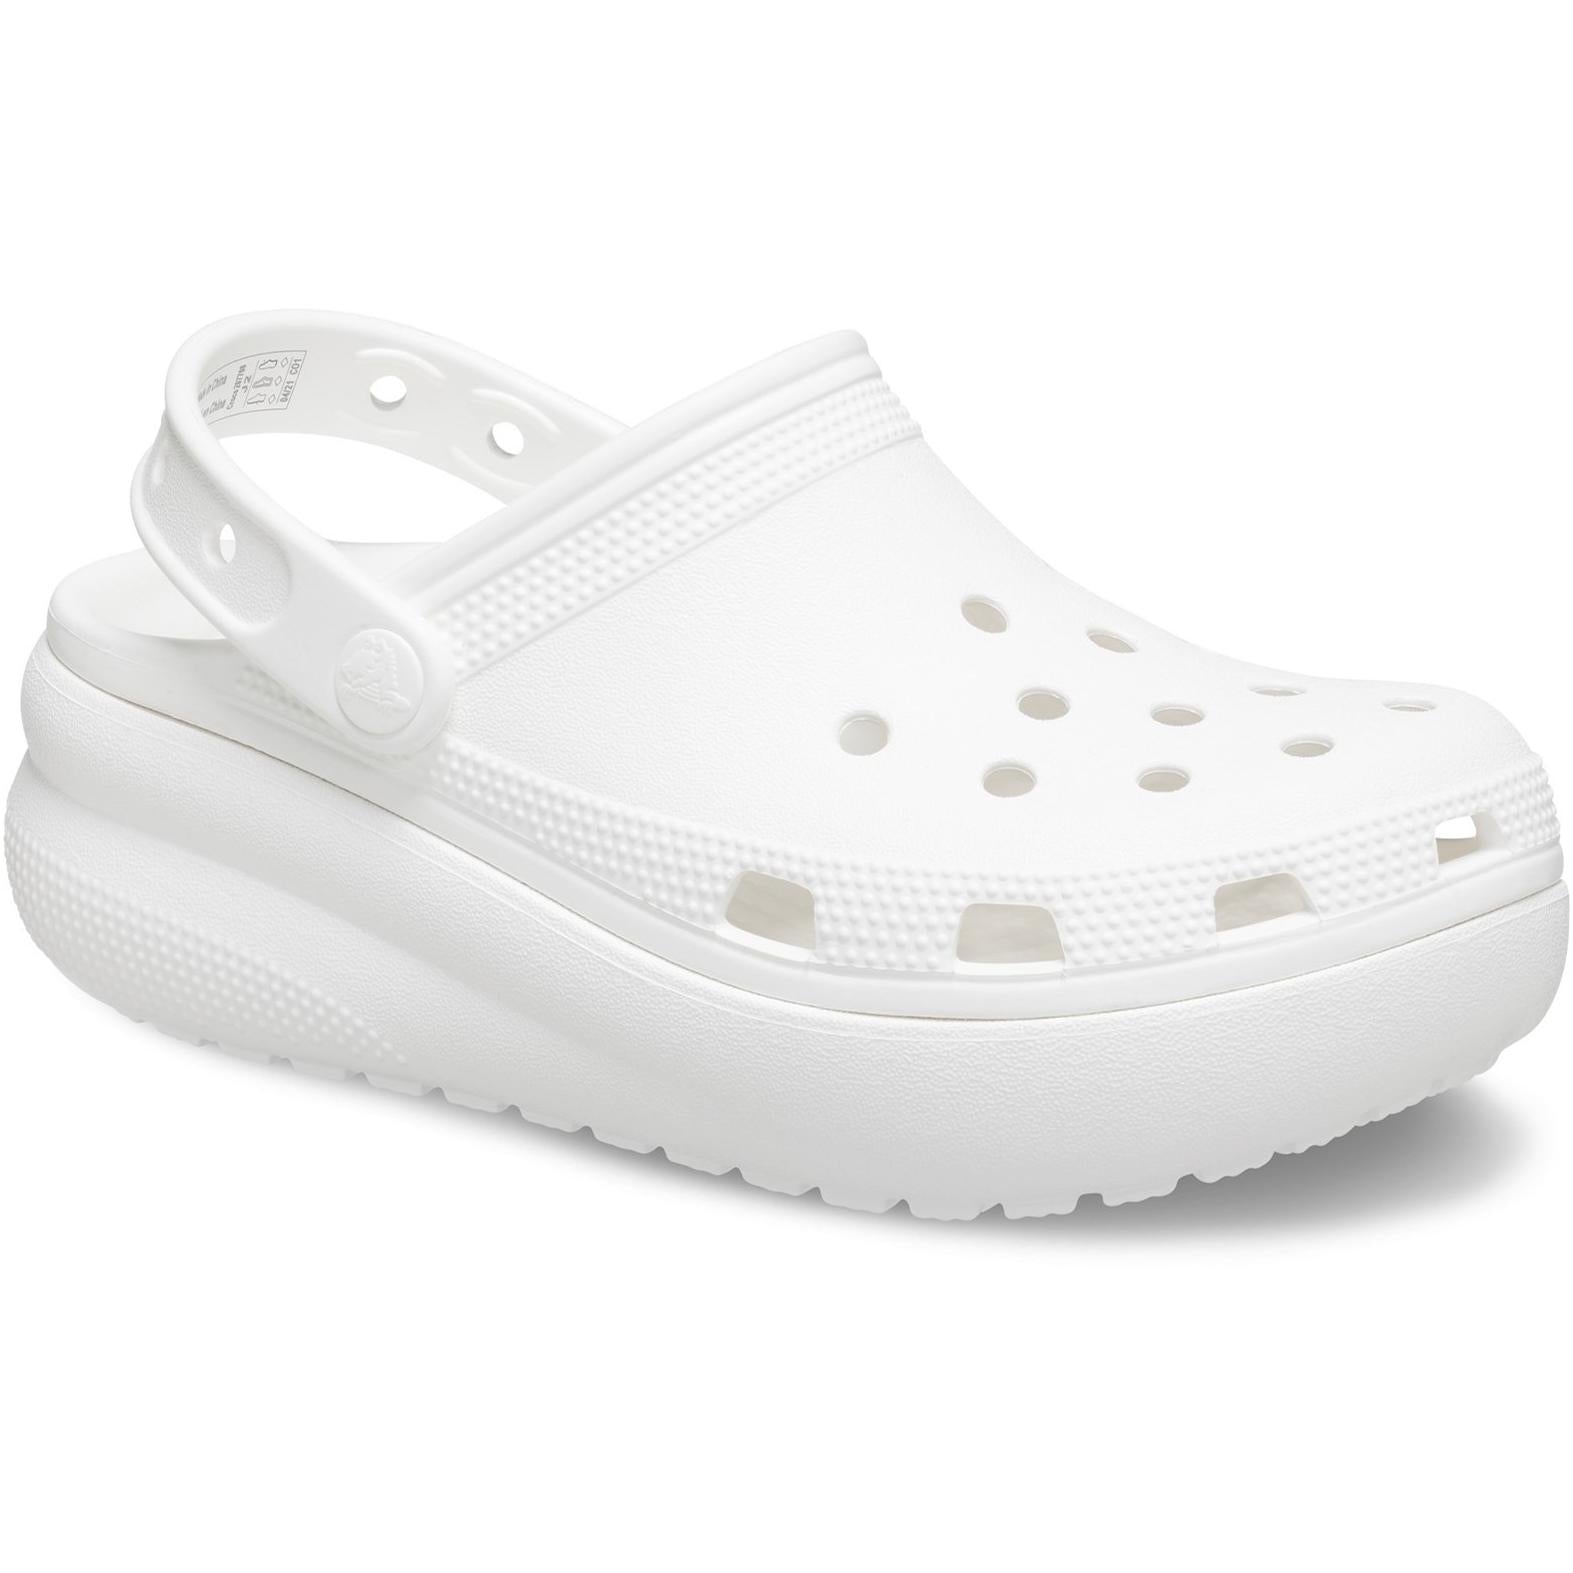 Crocs Classic Crocs Cutie Clog Sandals